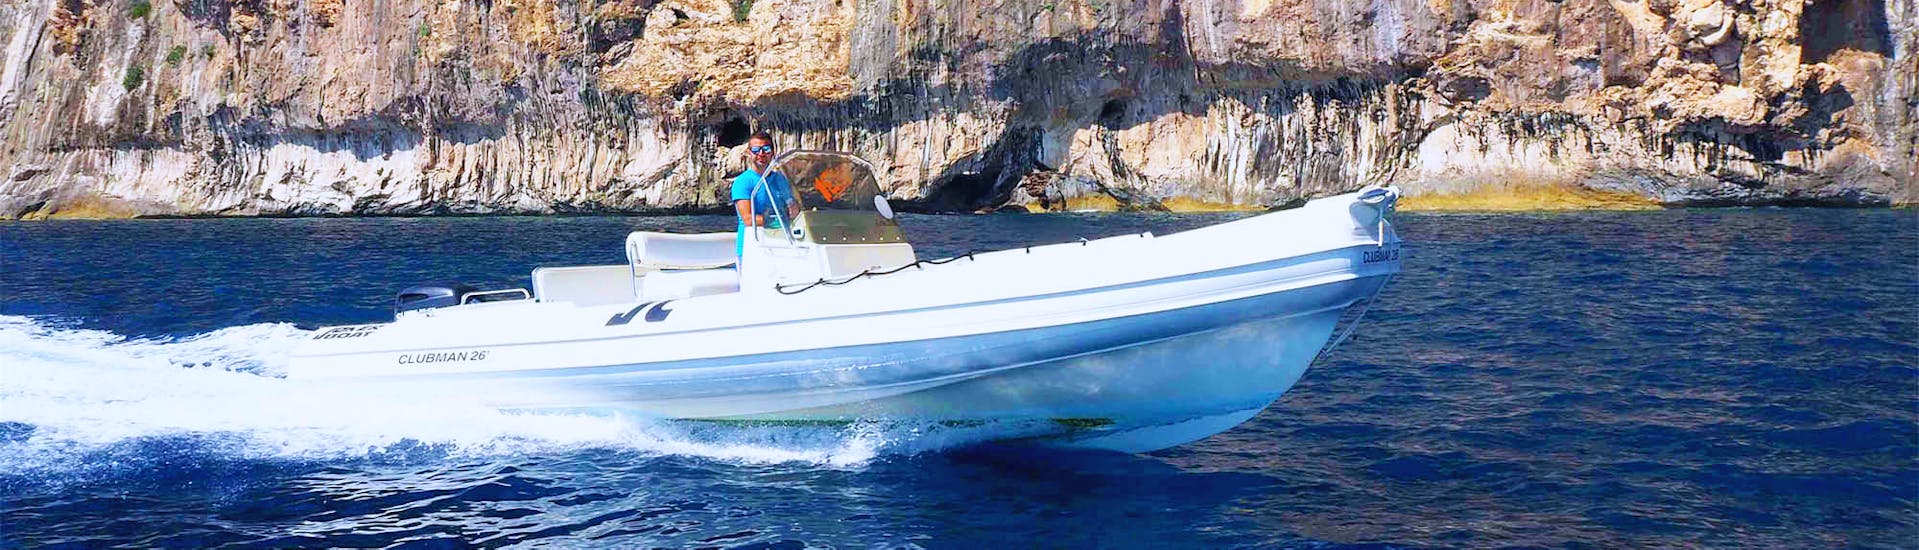 Bild eines RIB-Bootes aus dem RIB-Bootsverleih von East Coast Sardinia Excursion für bis zu 6 Personen.